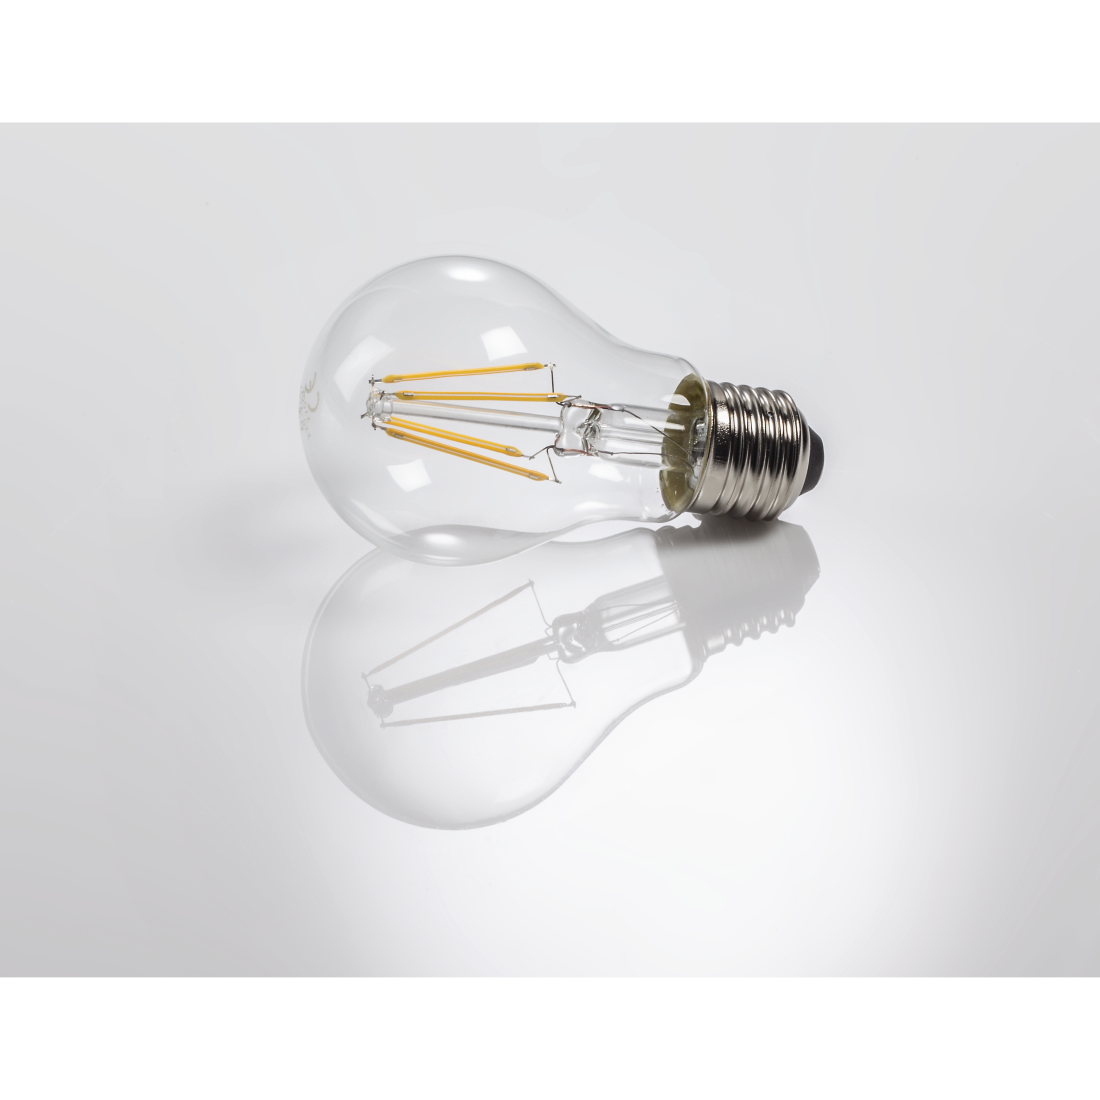 abx3 High-Res Image 3 - Xavax, Ampoule filament LED, E27, 1055lm rempl. ampoule incand., 75W, blc chd